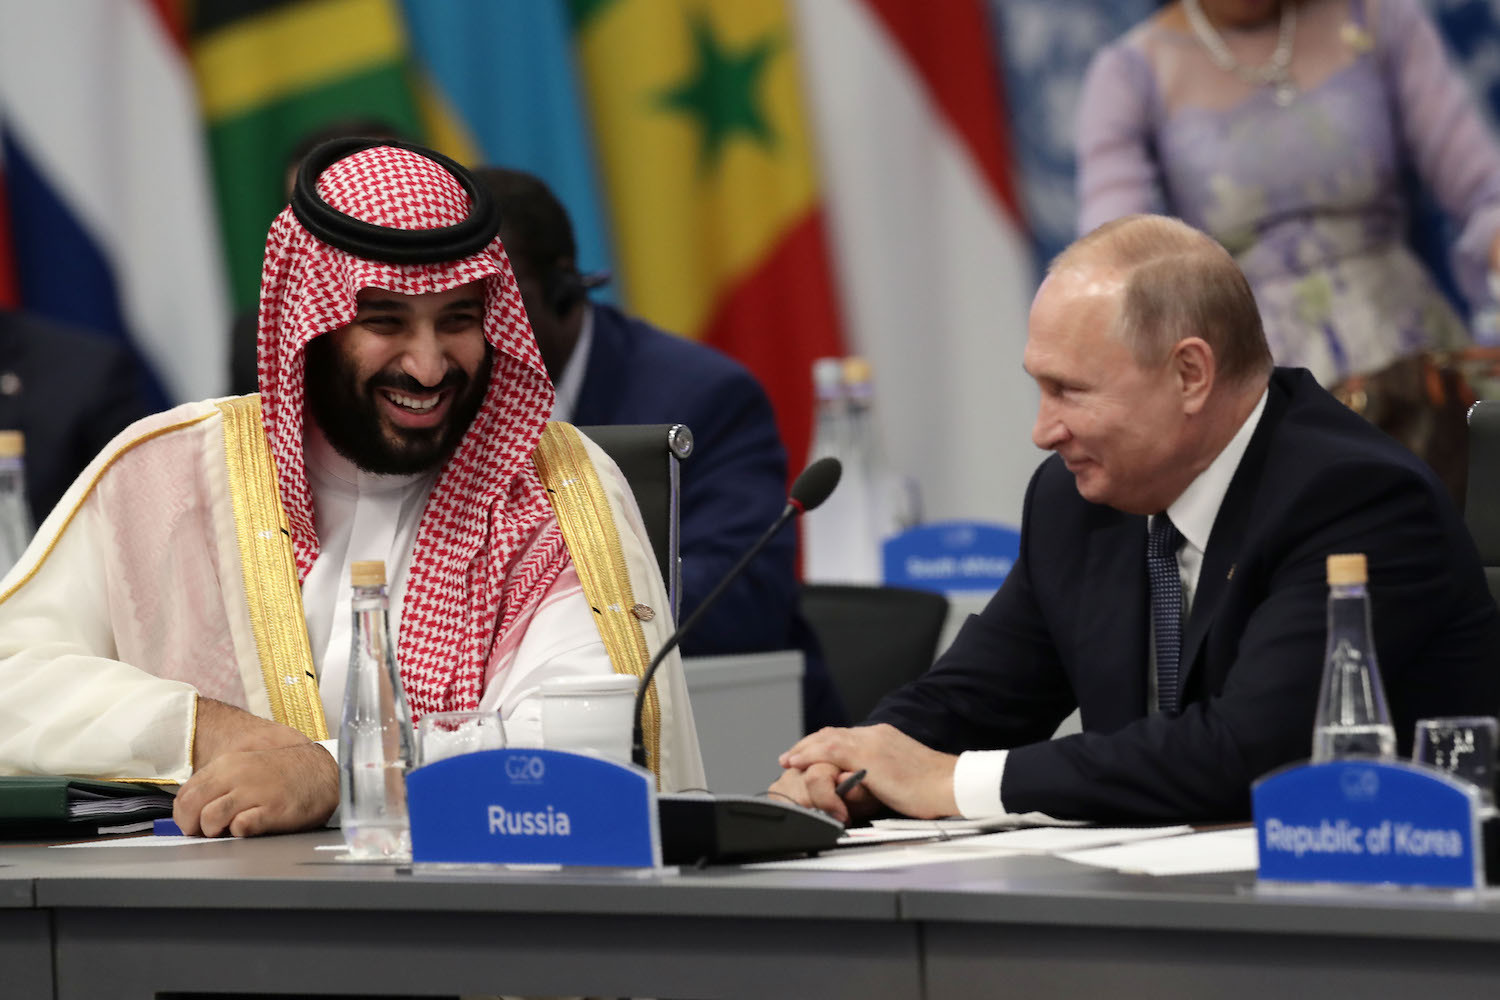 Tổng thống Nga Vladimir Putin và Thái tử Ả-rập Xê-út Mohammed bin Salman tại một cuộc họp